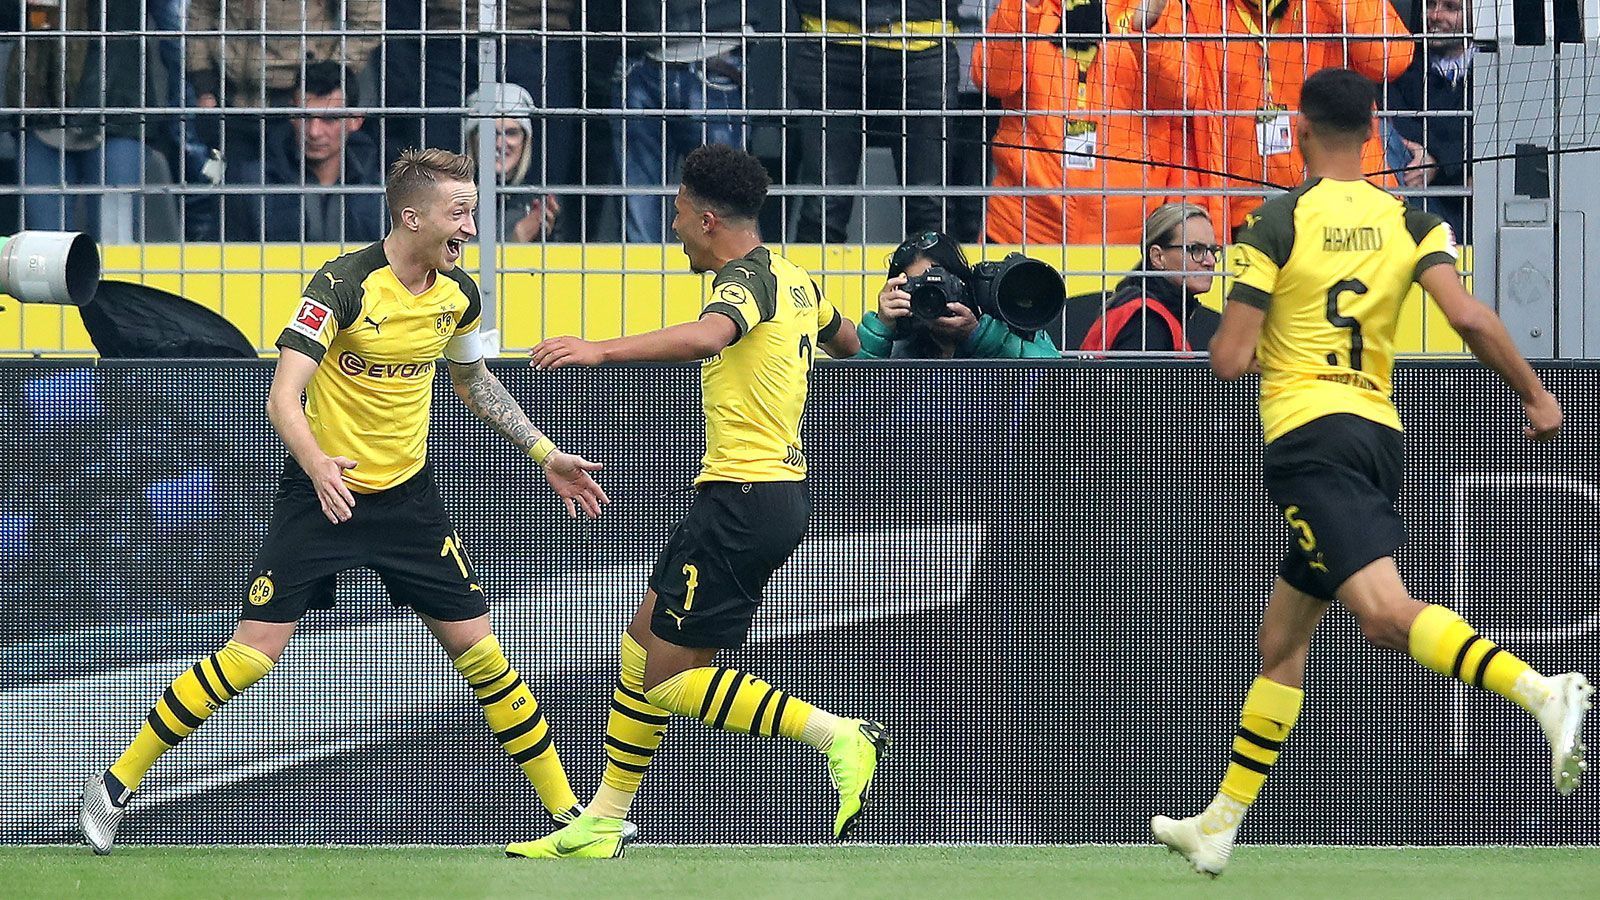 
                <strong>Dortmund gibt Sieg in letzter Minute aus der Hand</strong><br>
                Borussia Dortmund verteidigt gegen Hertha BSC die Tabellenführung in der Bundesliga. Shootingstar Jadon Sancho überstrahlt mit einem Doppelpack eine über weite Strecken herausragende Dortmunder Mannschaft, die durch einen kapitalen Bock in der 90. Minute den Sieg noch verspielt.
              